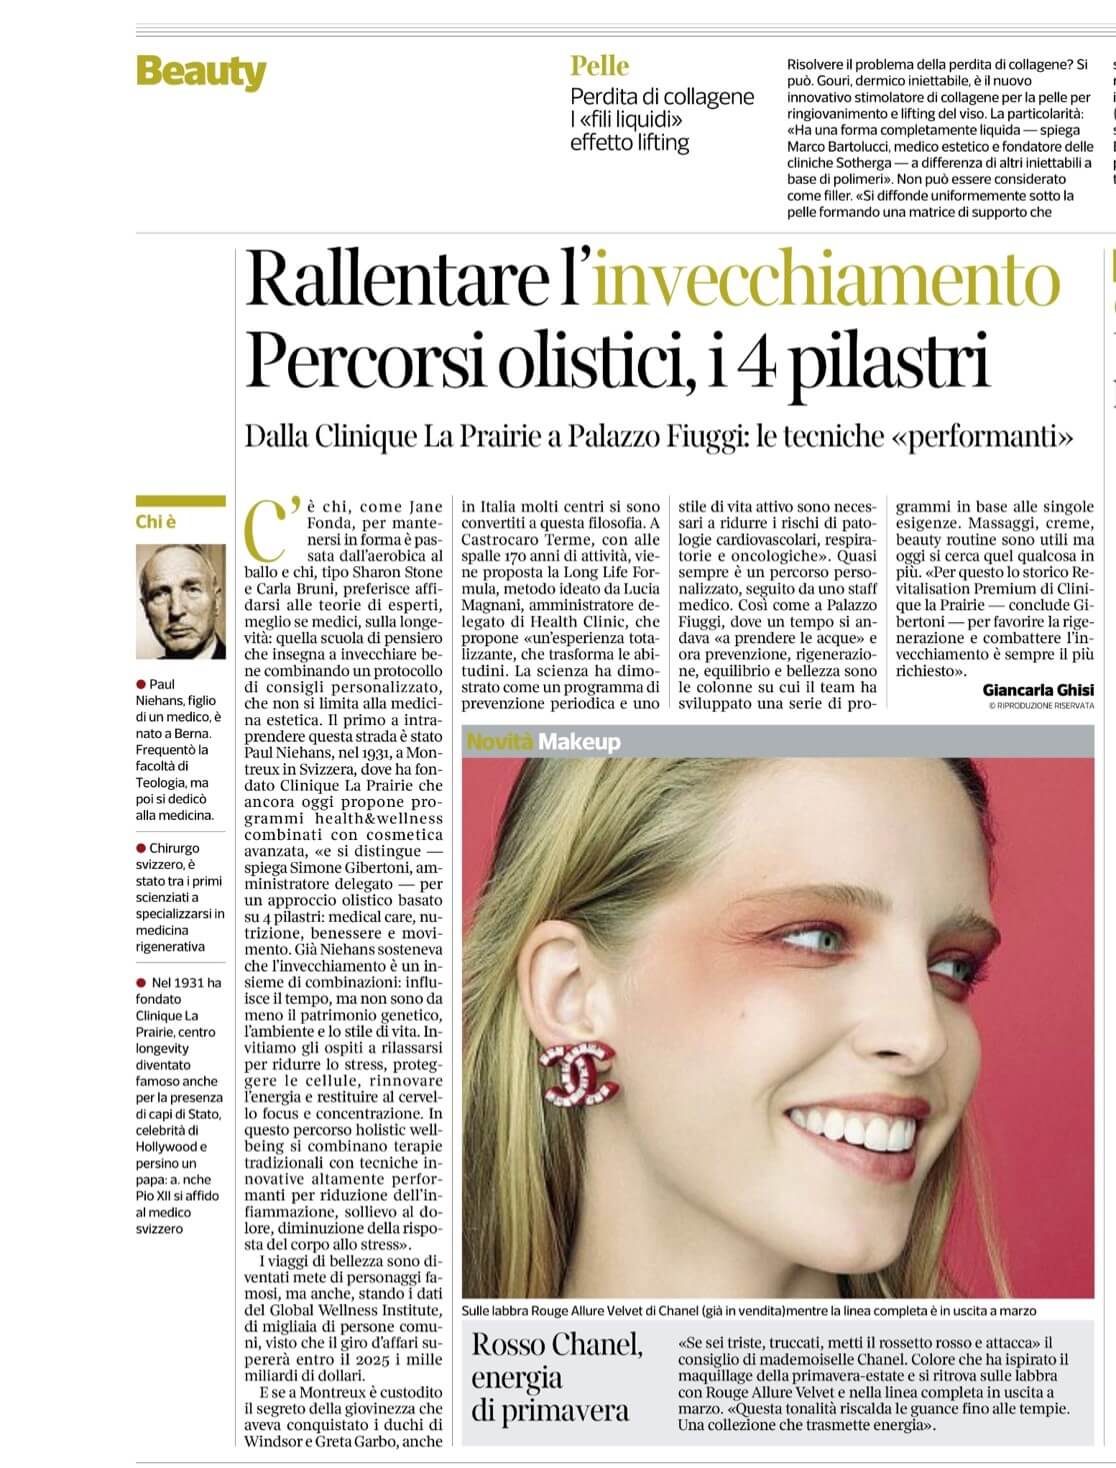 Corriere Della Sera article